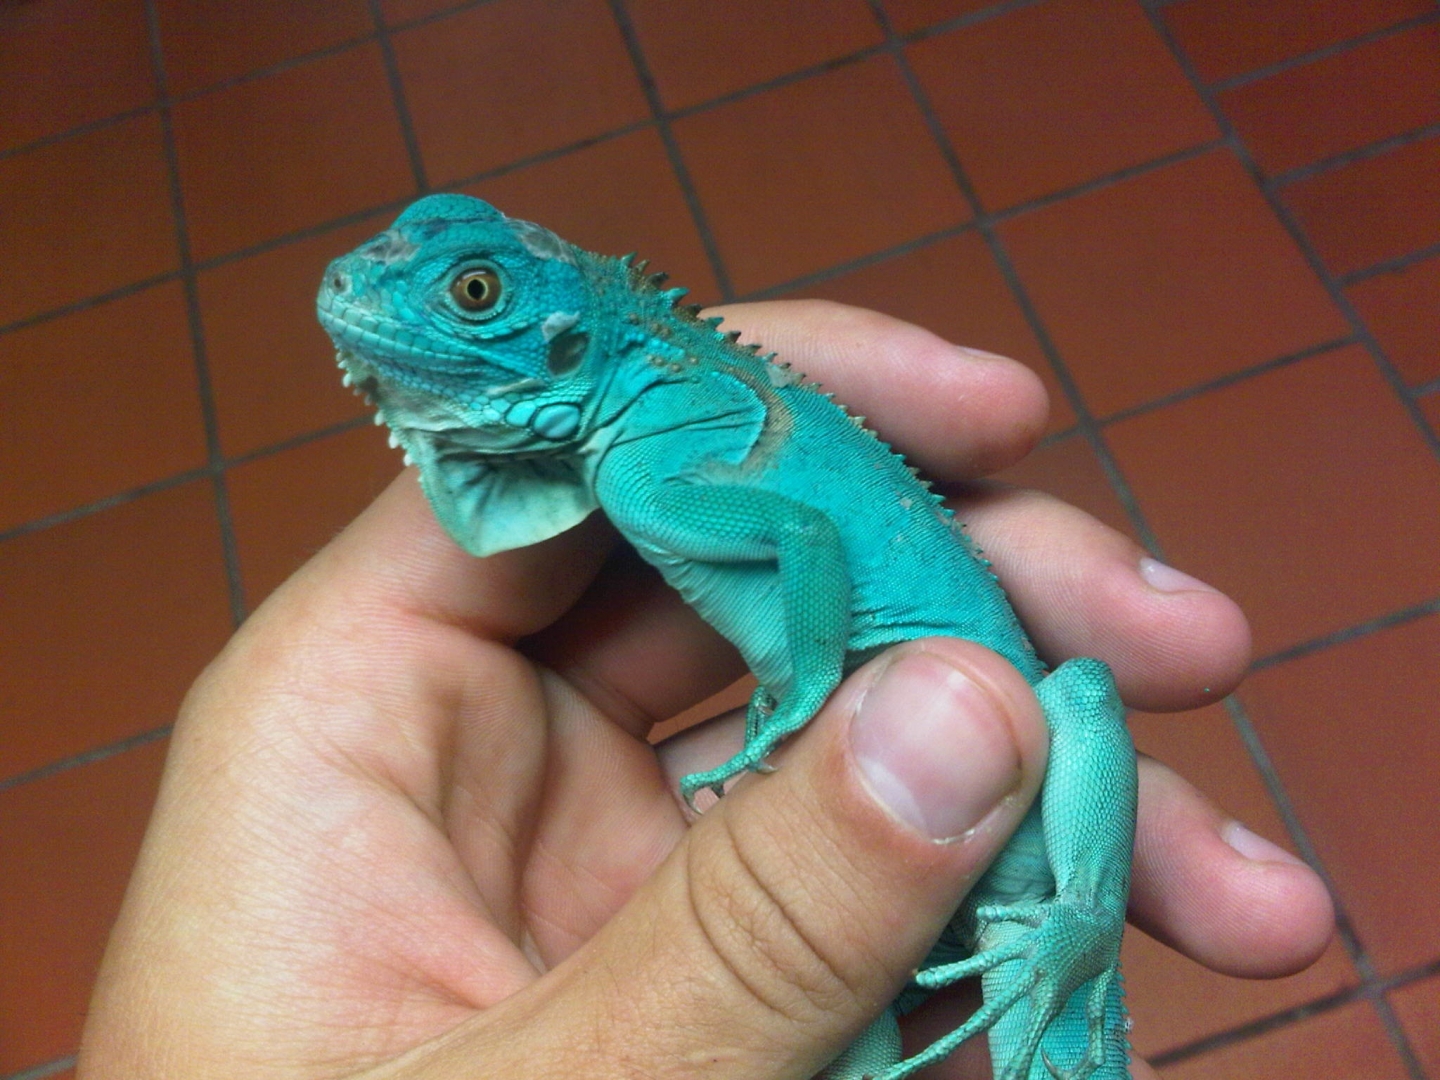 iguana blue